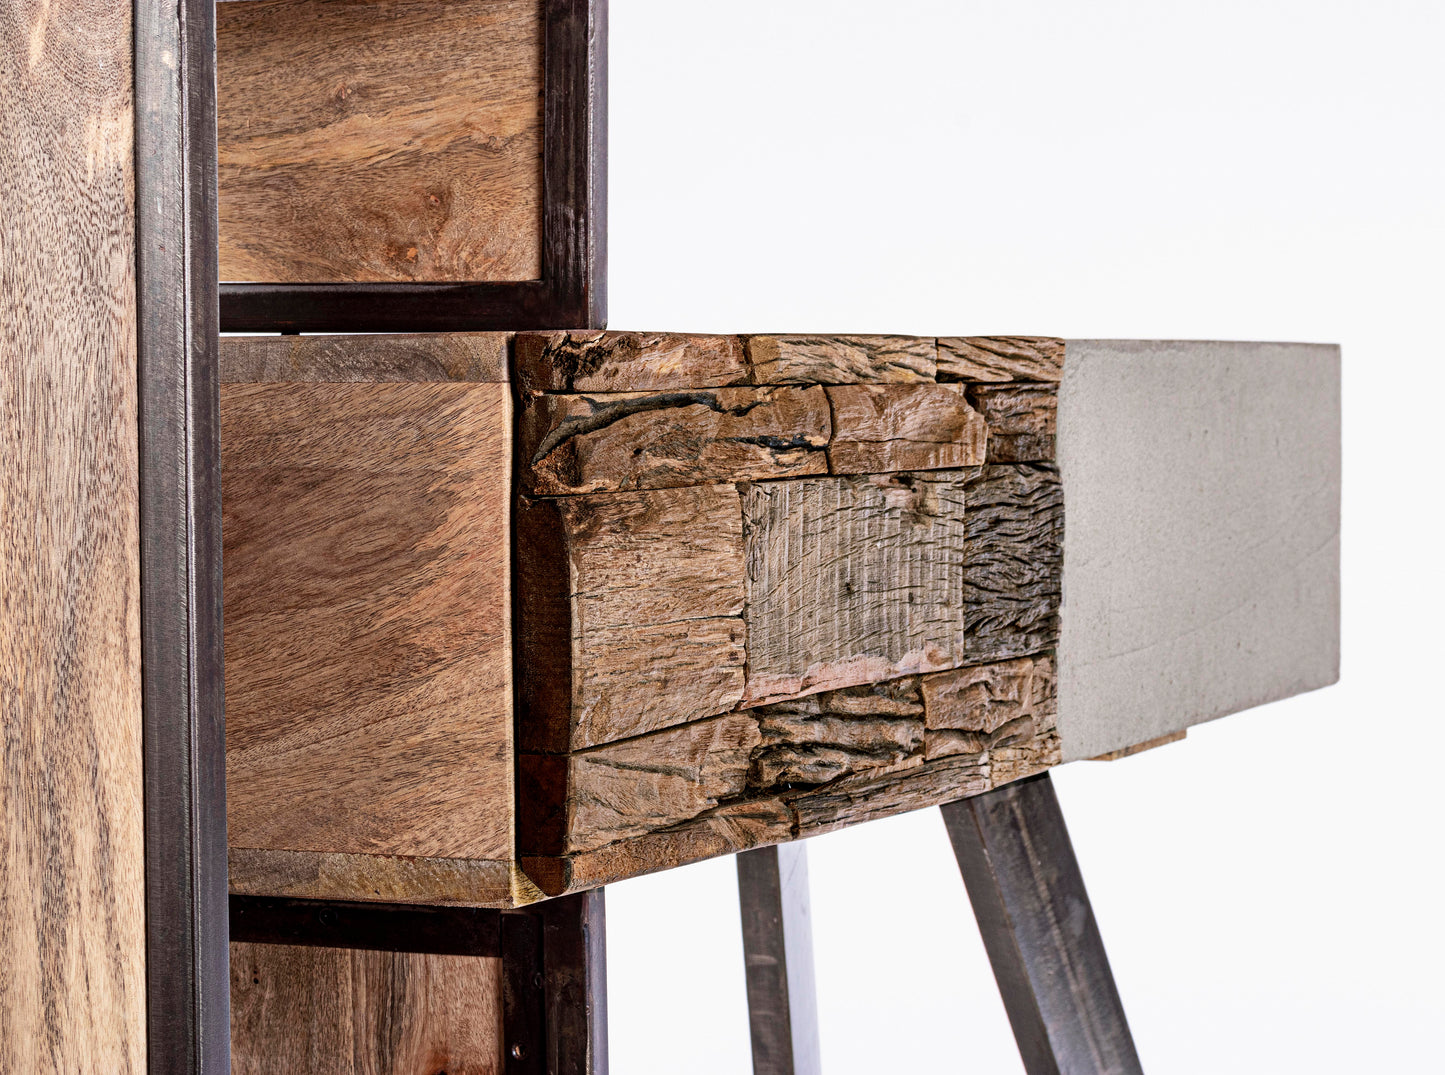 Consolle credenza industrial con frontali in legno ferro e cemento 2 cassetti